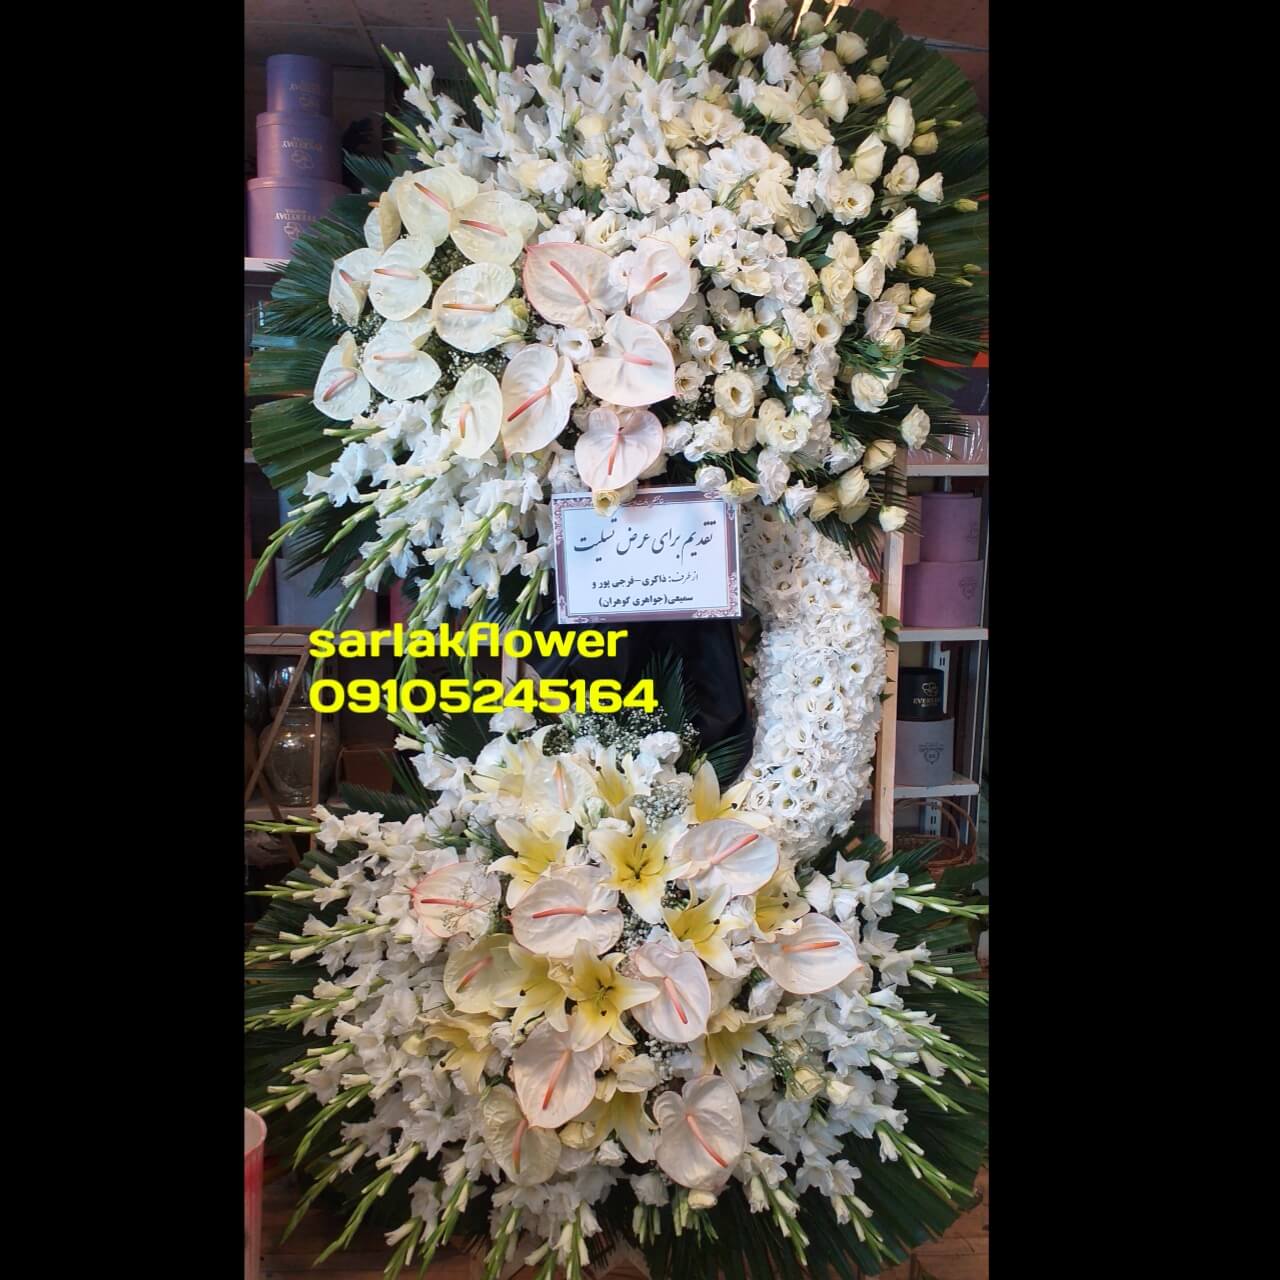 تاج گل برای مراسم ختم - تاج گل اینترنتی - تاج گل آنلاین